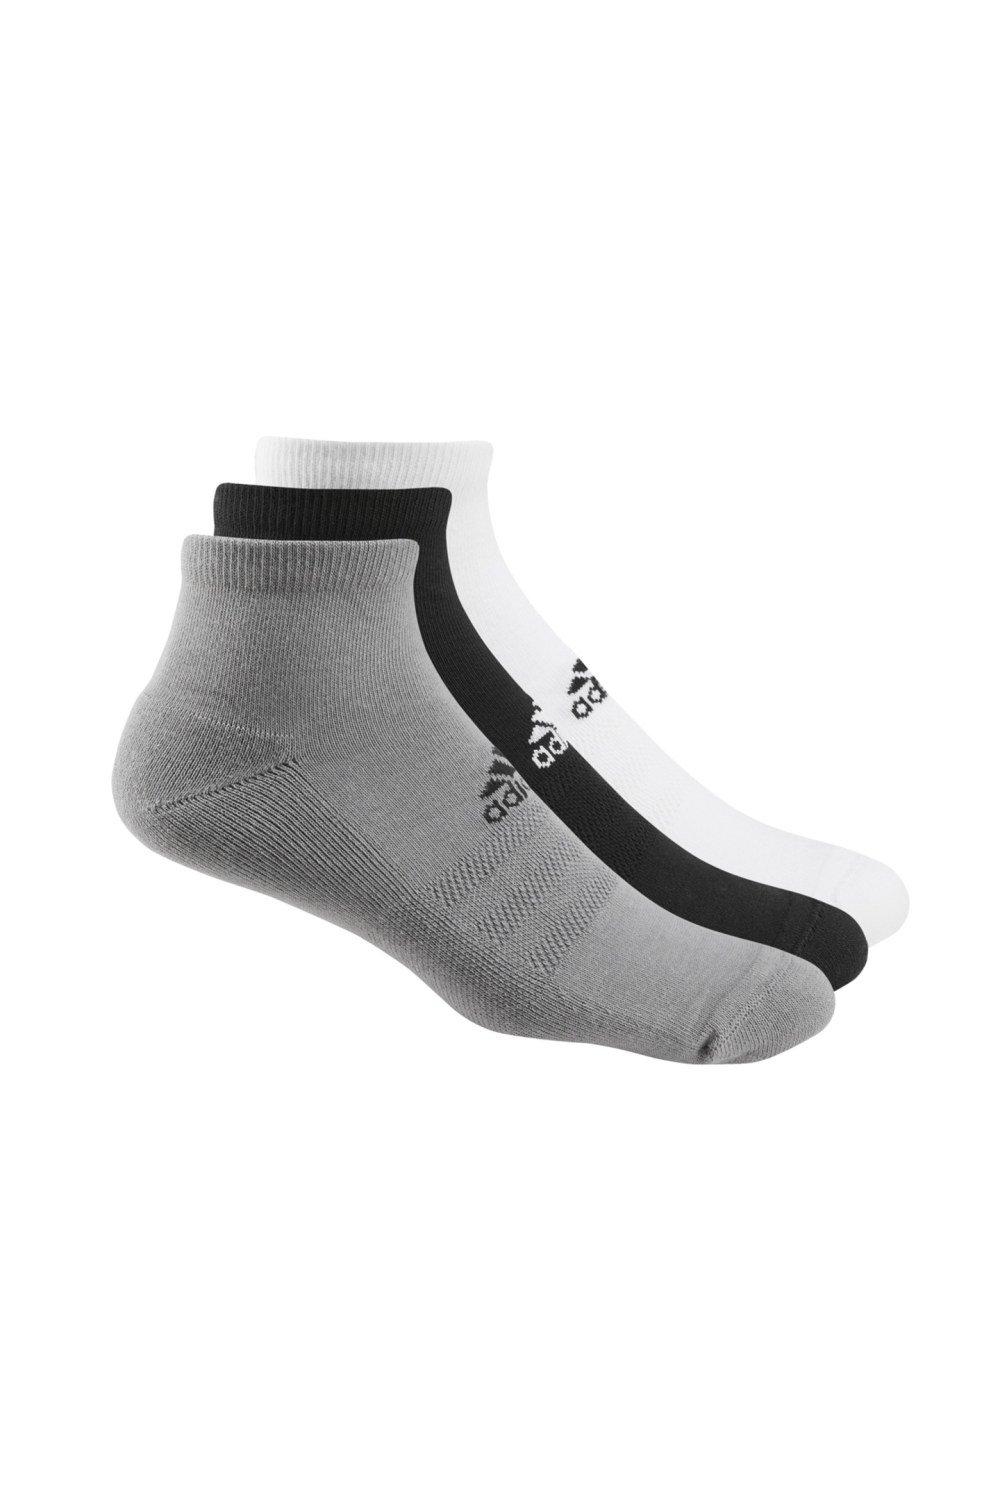 Golf Ankle Socks (Pack of 3)